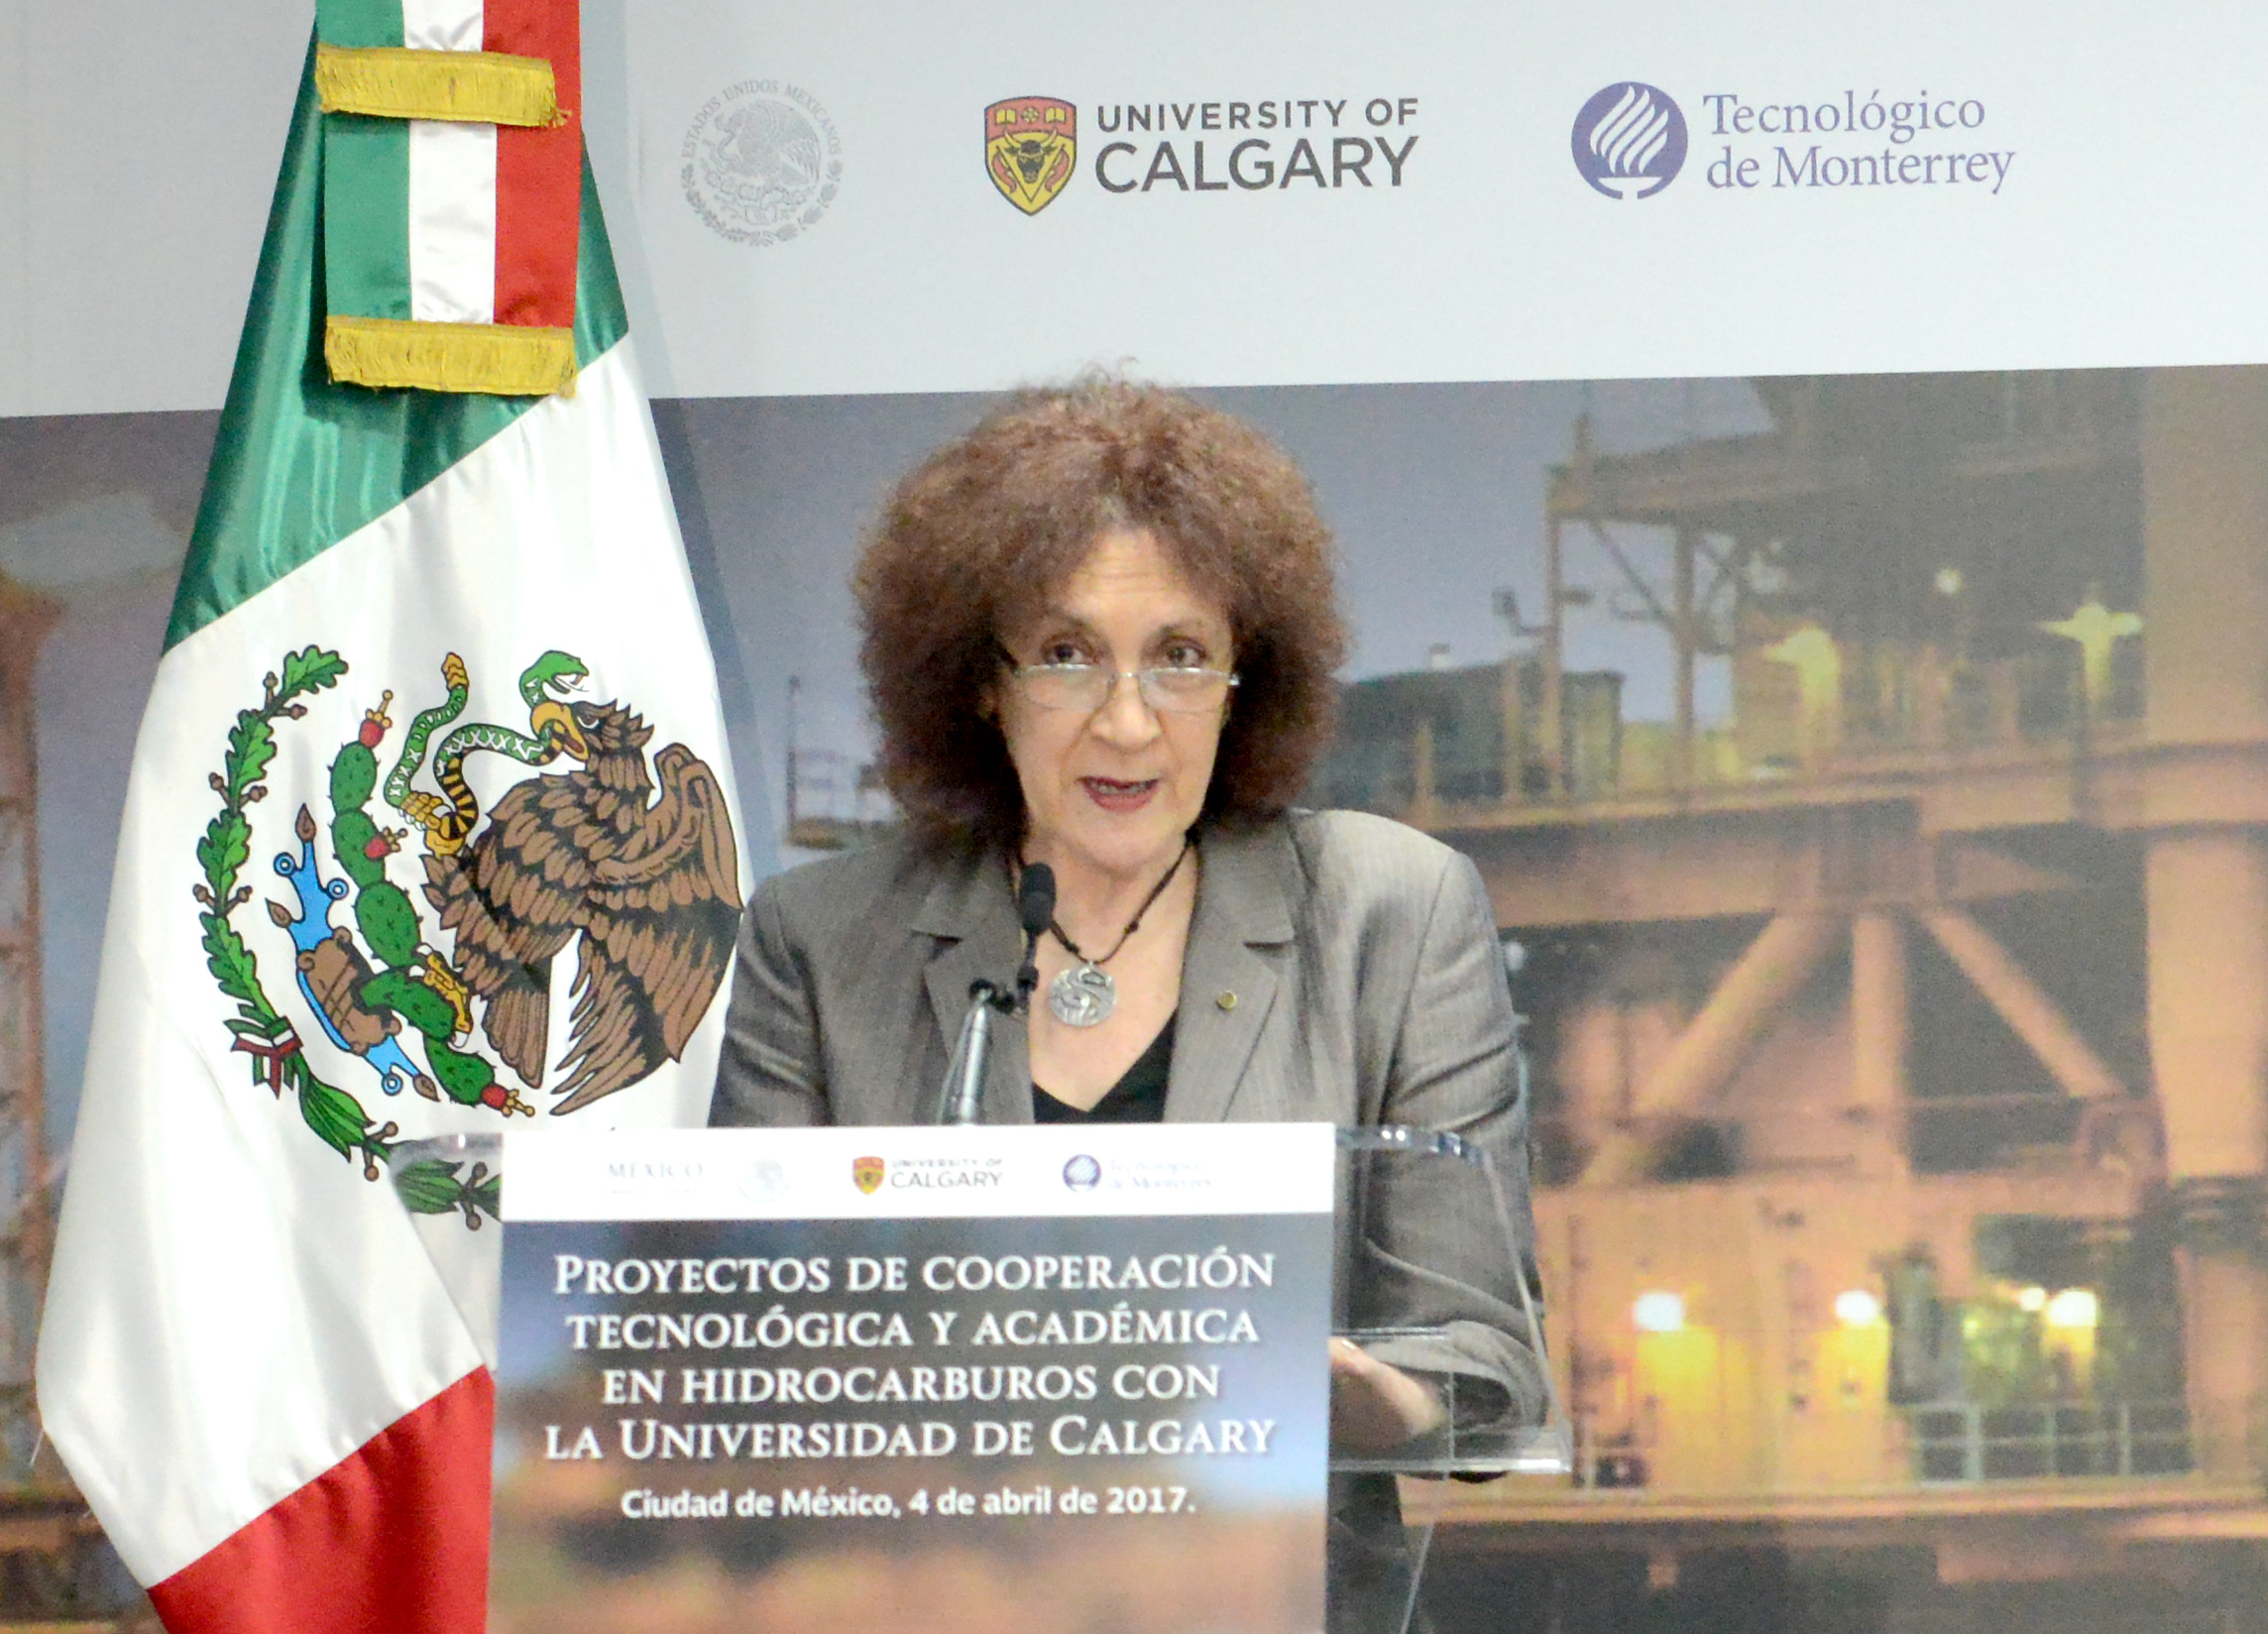 Julia Tagüeña Parga, Directora Adjunta de Desarrollo Científico del Conacyt, comentó que la convocatoria dada a conocer hoy,  busca fortalecer la capacitación y desarrollo de investigación, desarrollo tecnológico, escalamiento y despliegue de tecnologías para el sector hidrocarburos a través de la creación de redes de conocimiento en México con colaboración de la Universidad de Calgary.